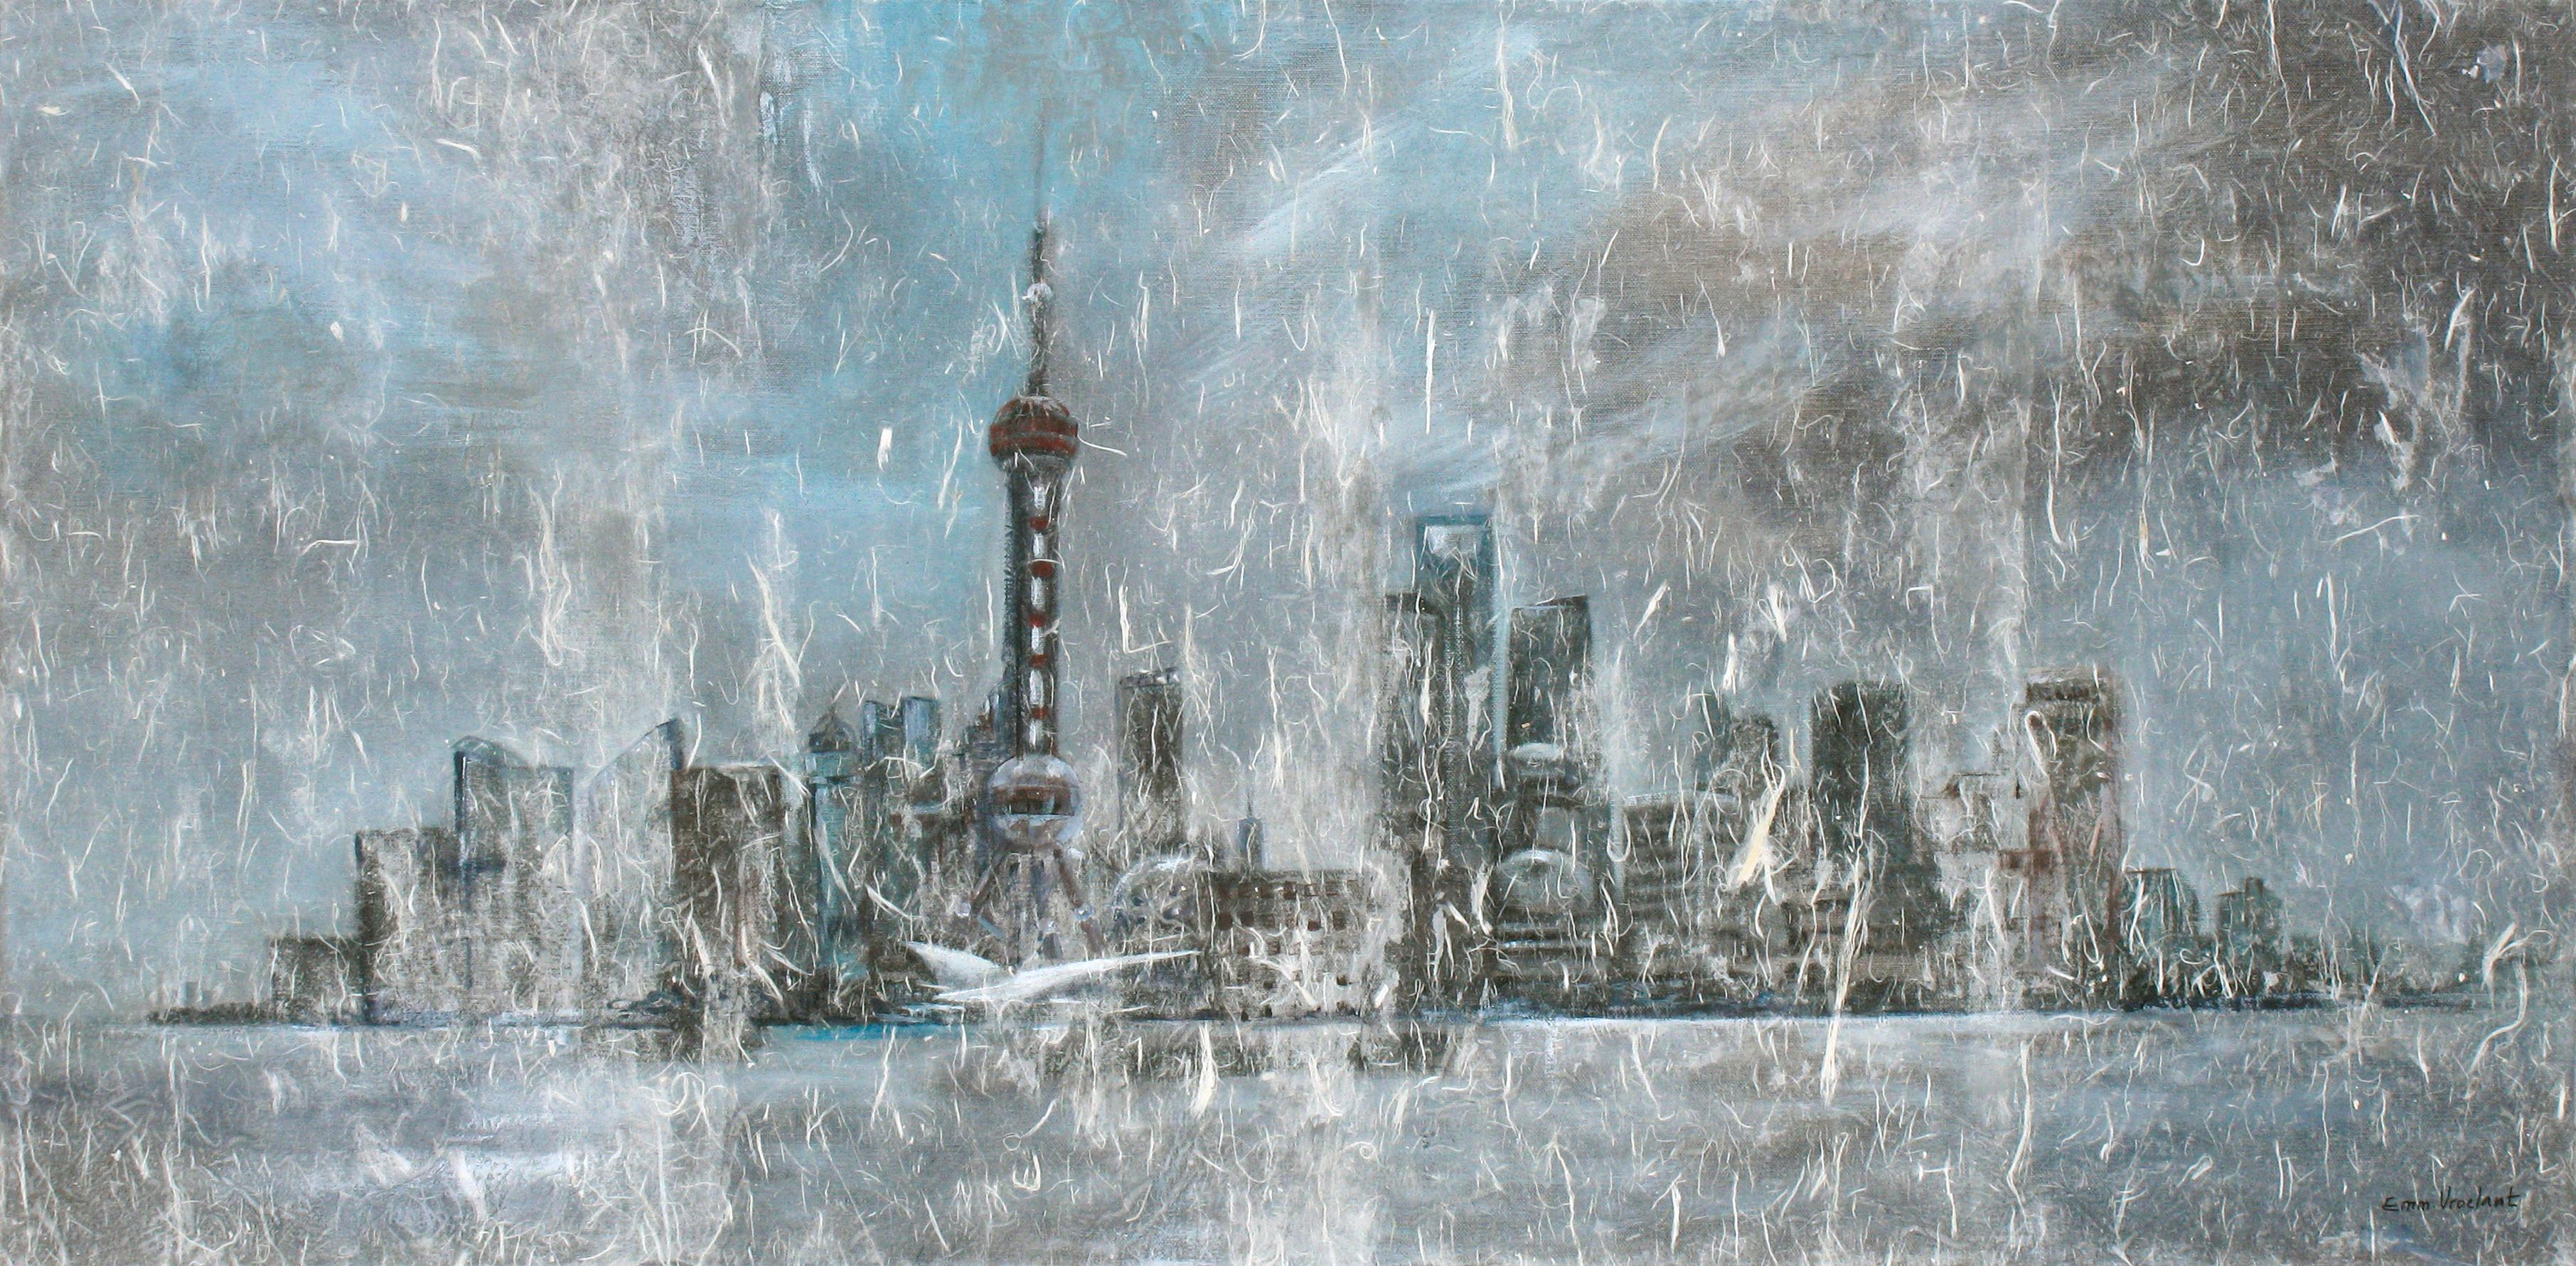 Toile en lin acrylique « Shanghai in the mist » (Shanghai dans la brume) 2009 50x100cm